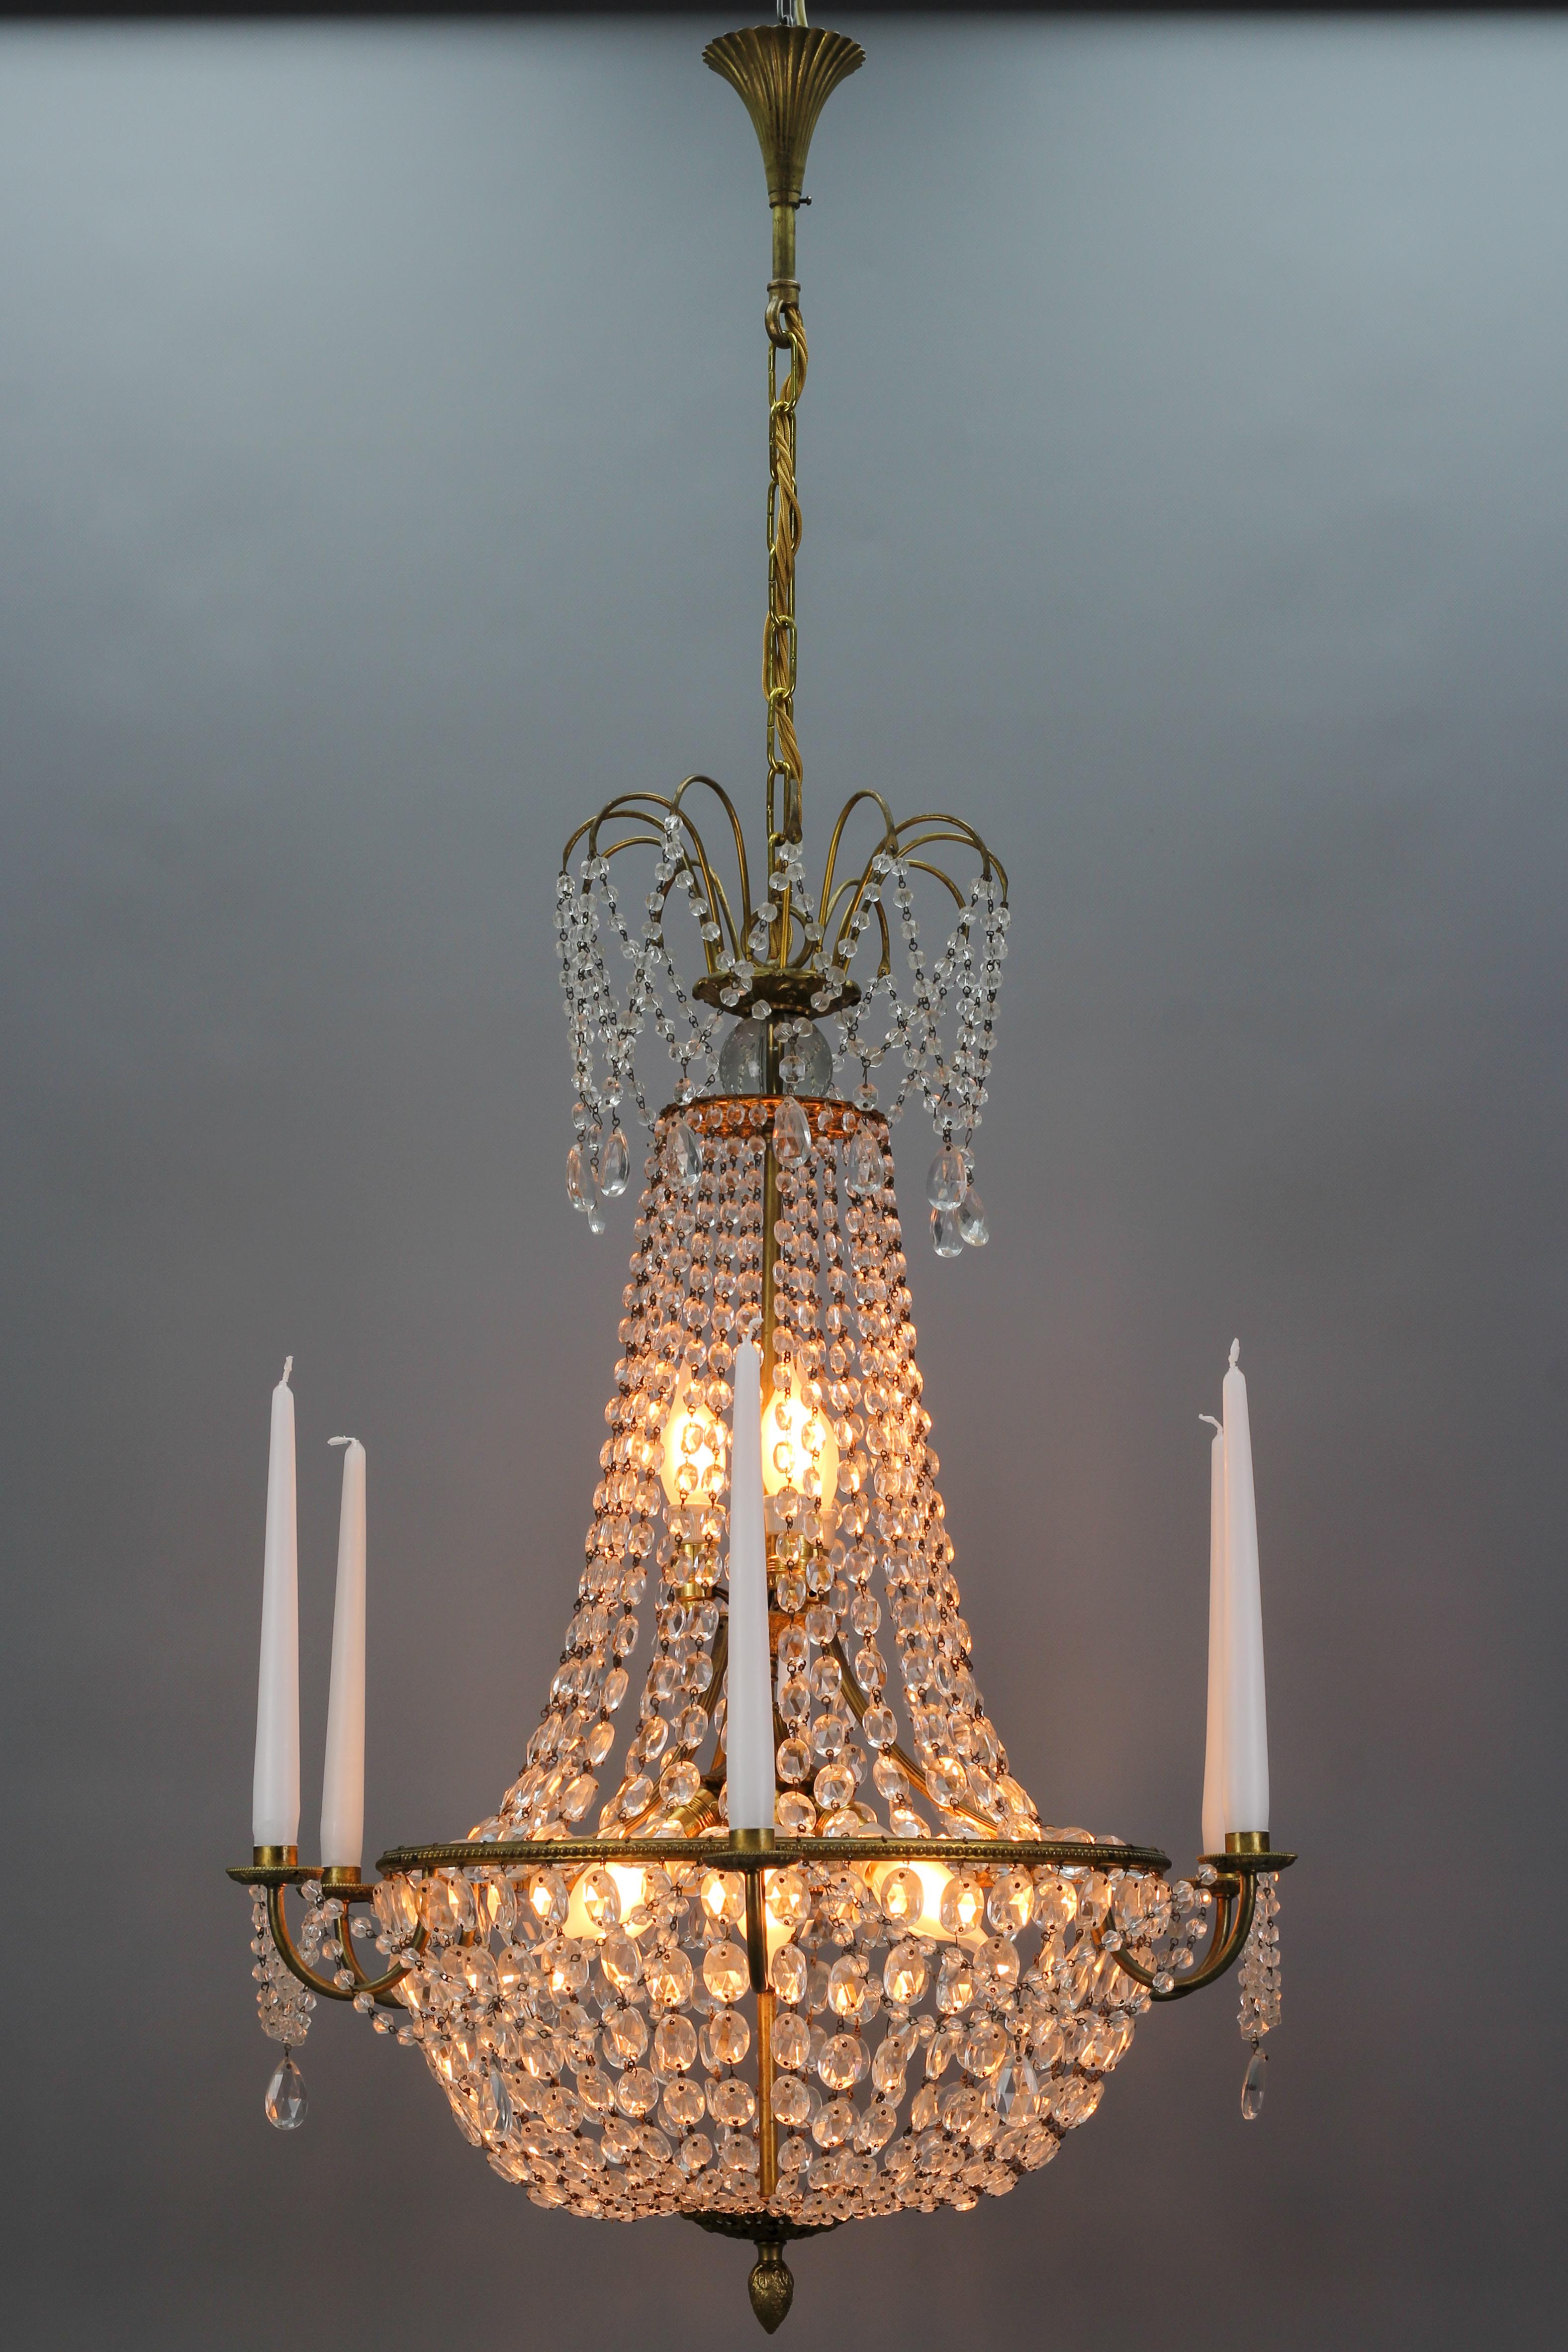 Magnifique et subtil lustre à panier en laiton et cristal de style Louis XVI de la fin du 19e siècle avec une couronne de fontaine, ayant un dais élégamment drapé avec des cristaux en perles en cascade et des prismes en forme d'amande. Ce superbe